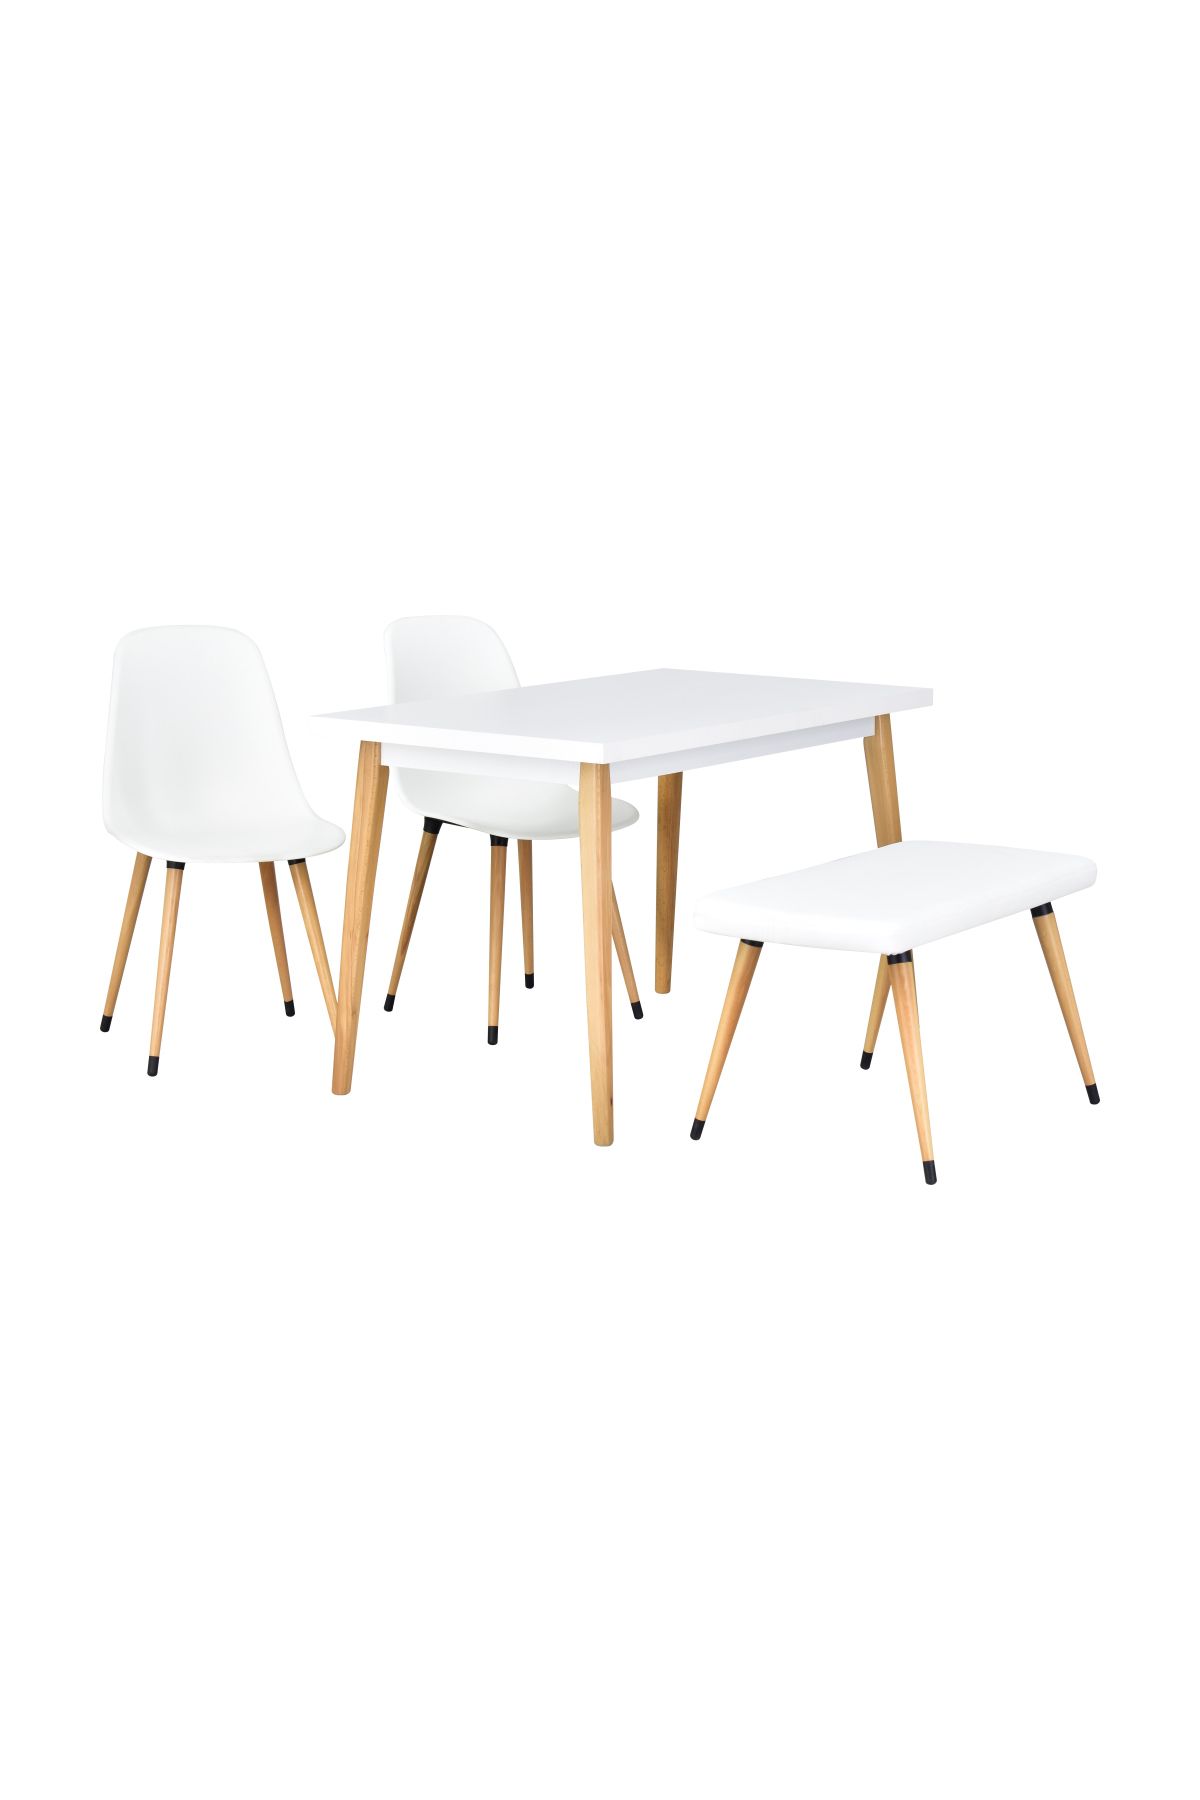 VİLİNZE Eames Sandalye-bank Avanos Ahşap Mdf Mutfak Masası Takımı - 70x120 Cm